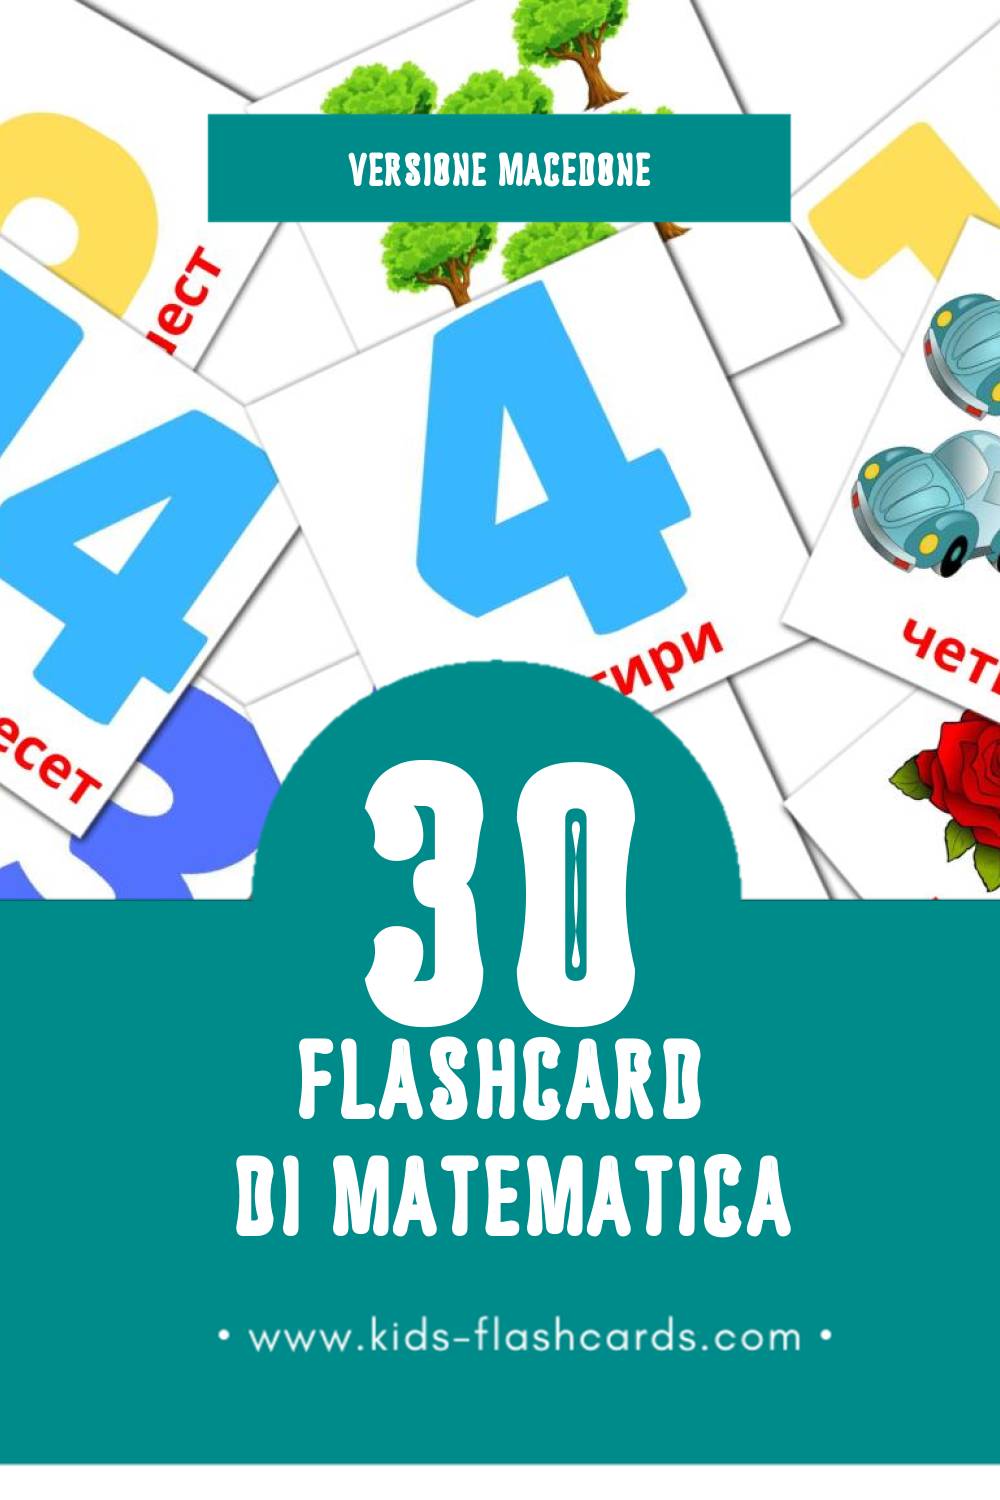 Schede visive sugli Математика per bambini (30 schede in Macedone)